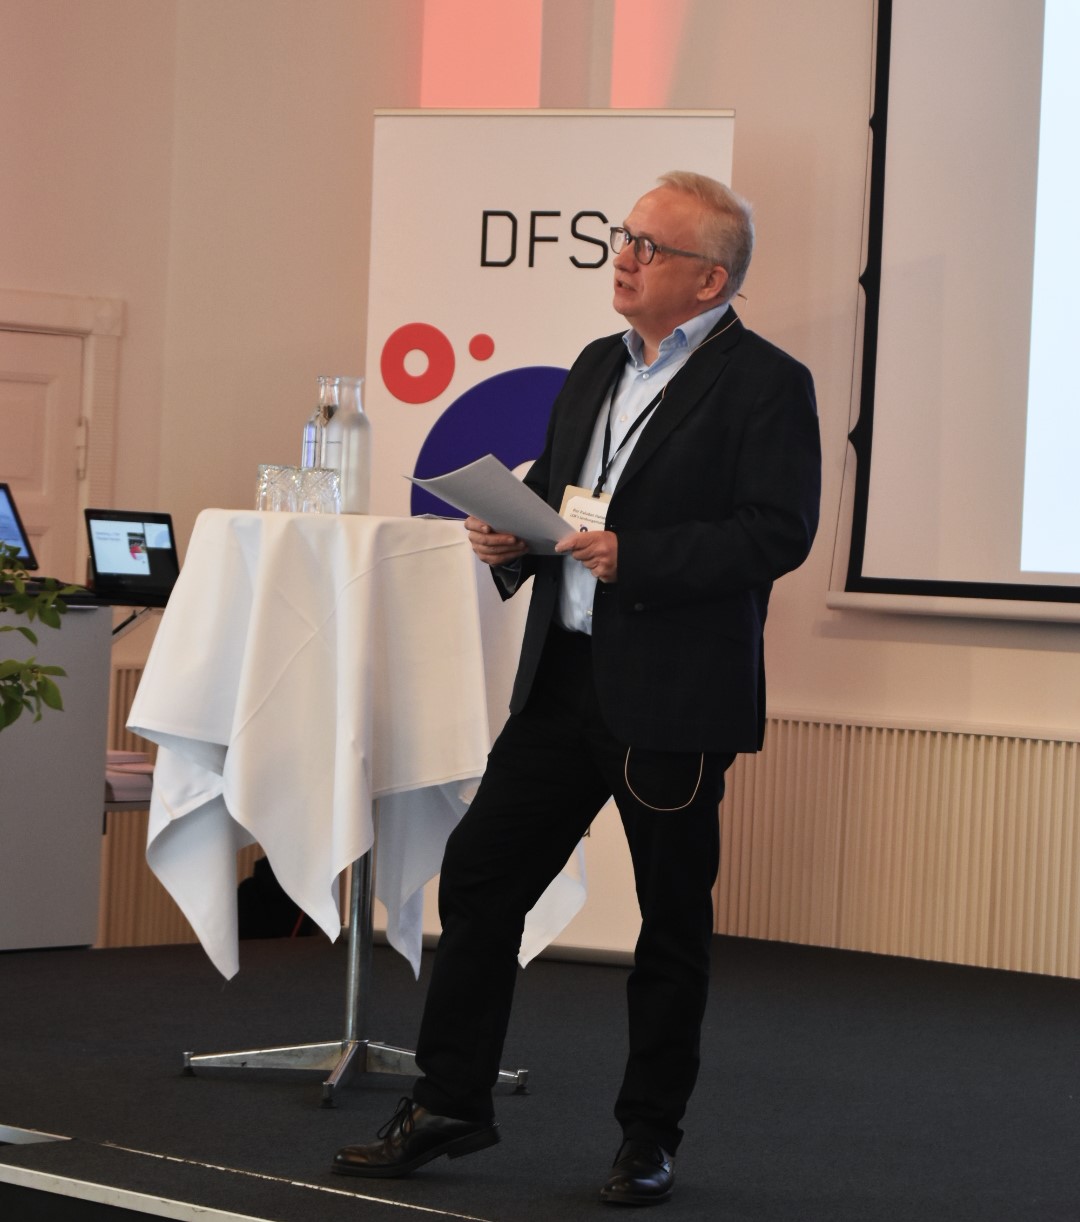 Formand for DFS, Per Paludan Hansen, gav sin beretning og indbød efterfølgende til debat